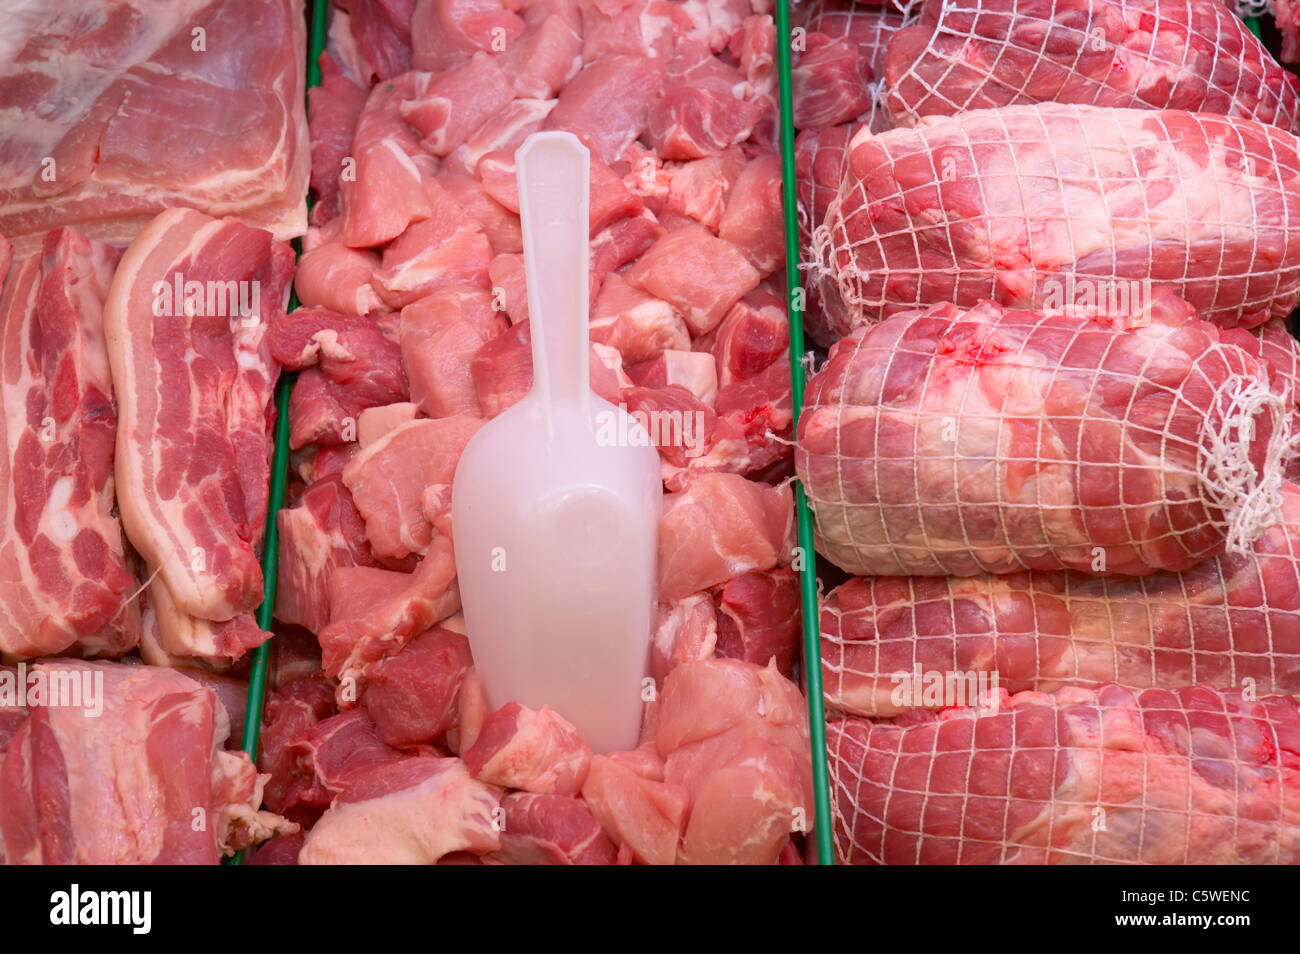 Affichage de la viande en supermarché Banque D'Images